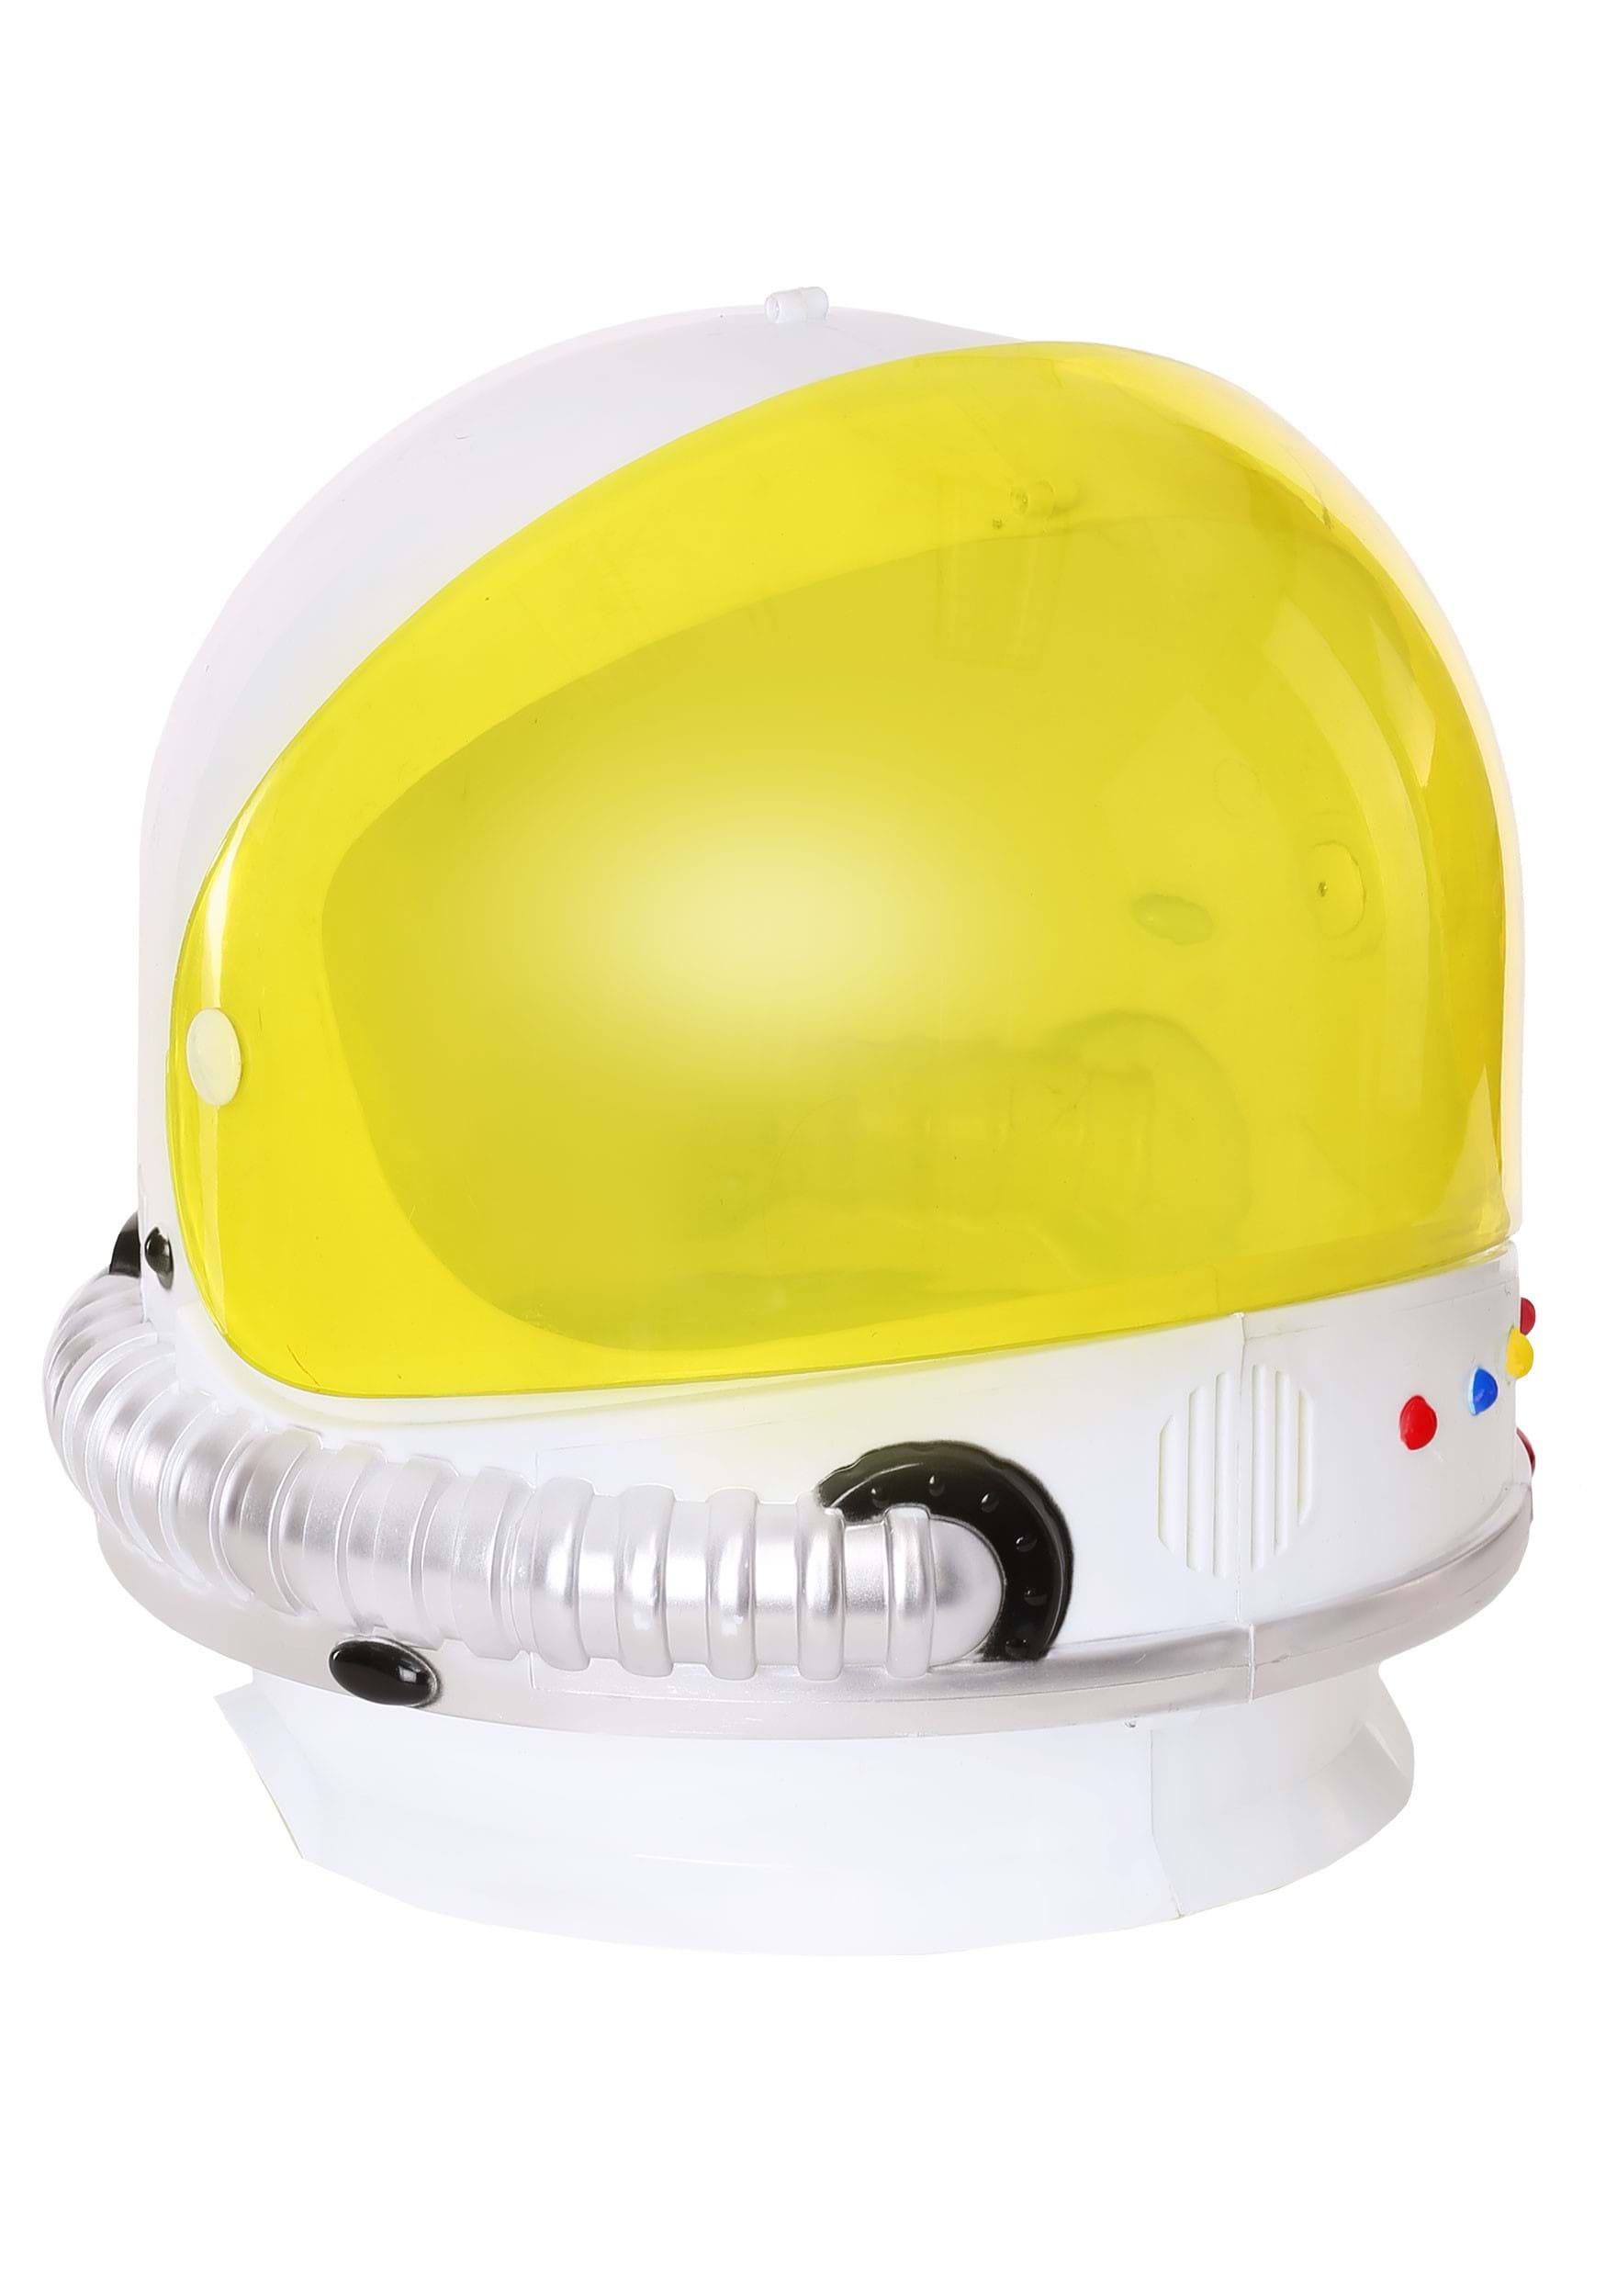 Childrens Astronaut Helmet